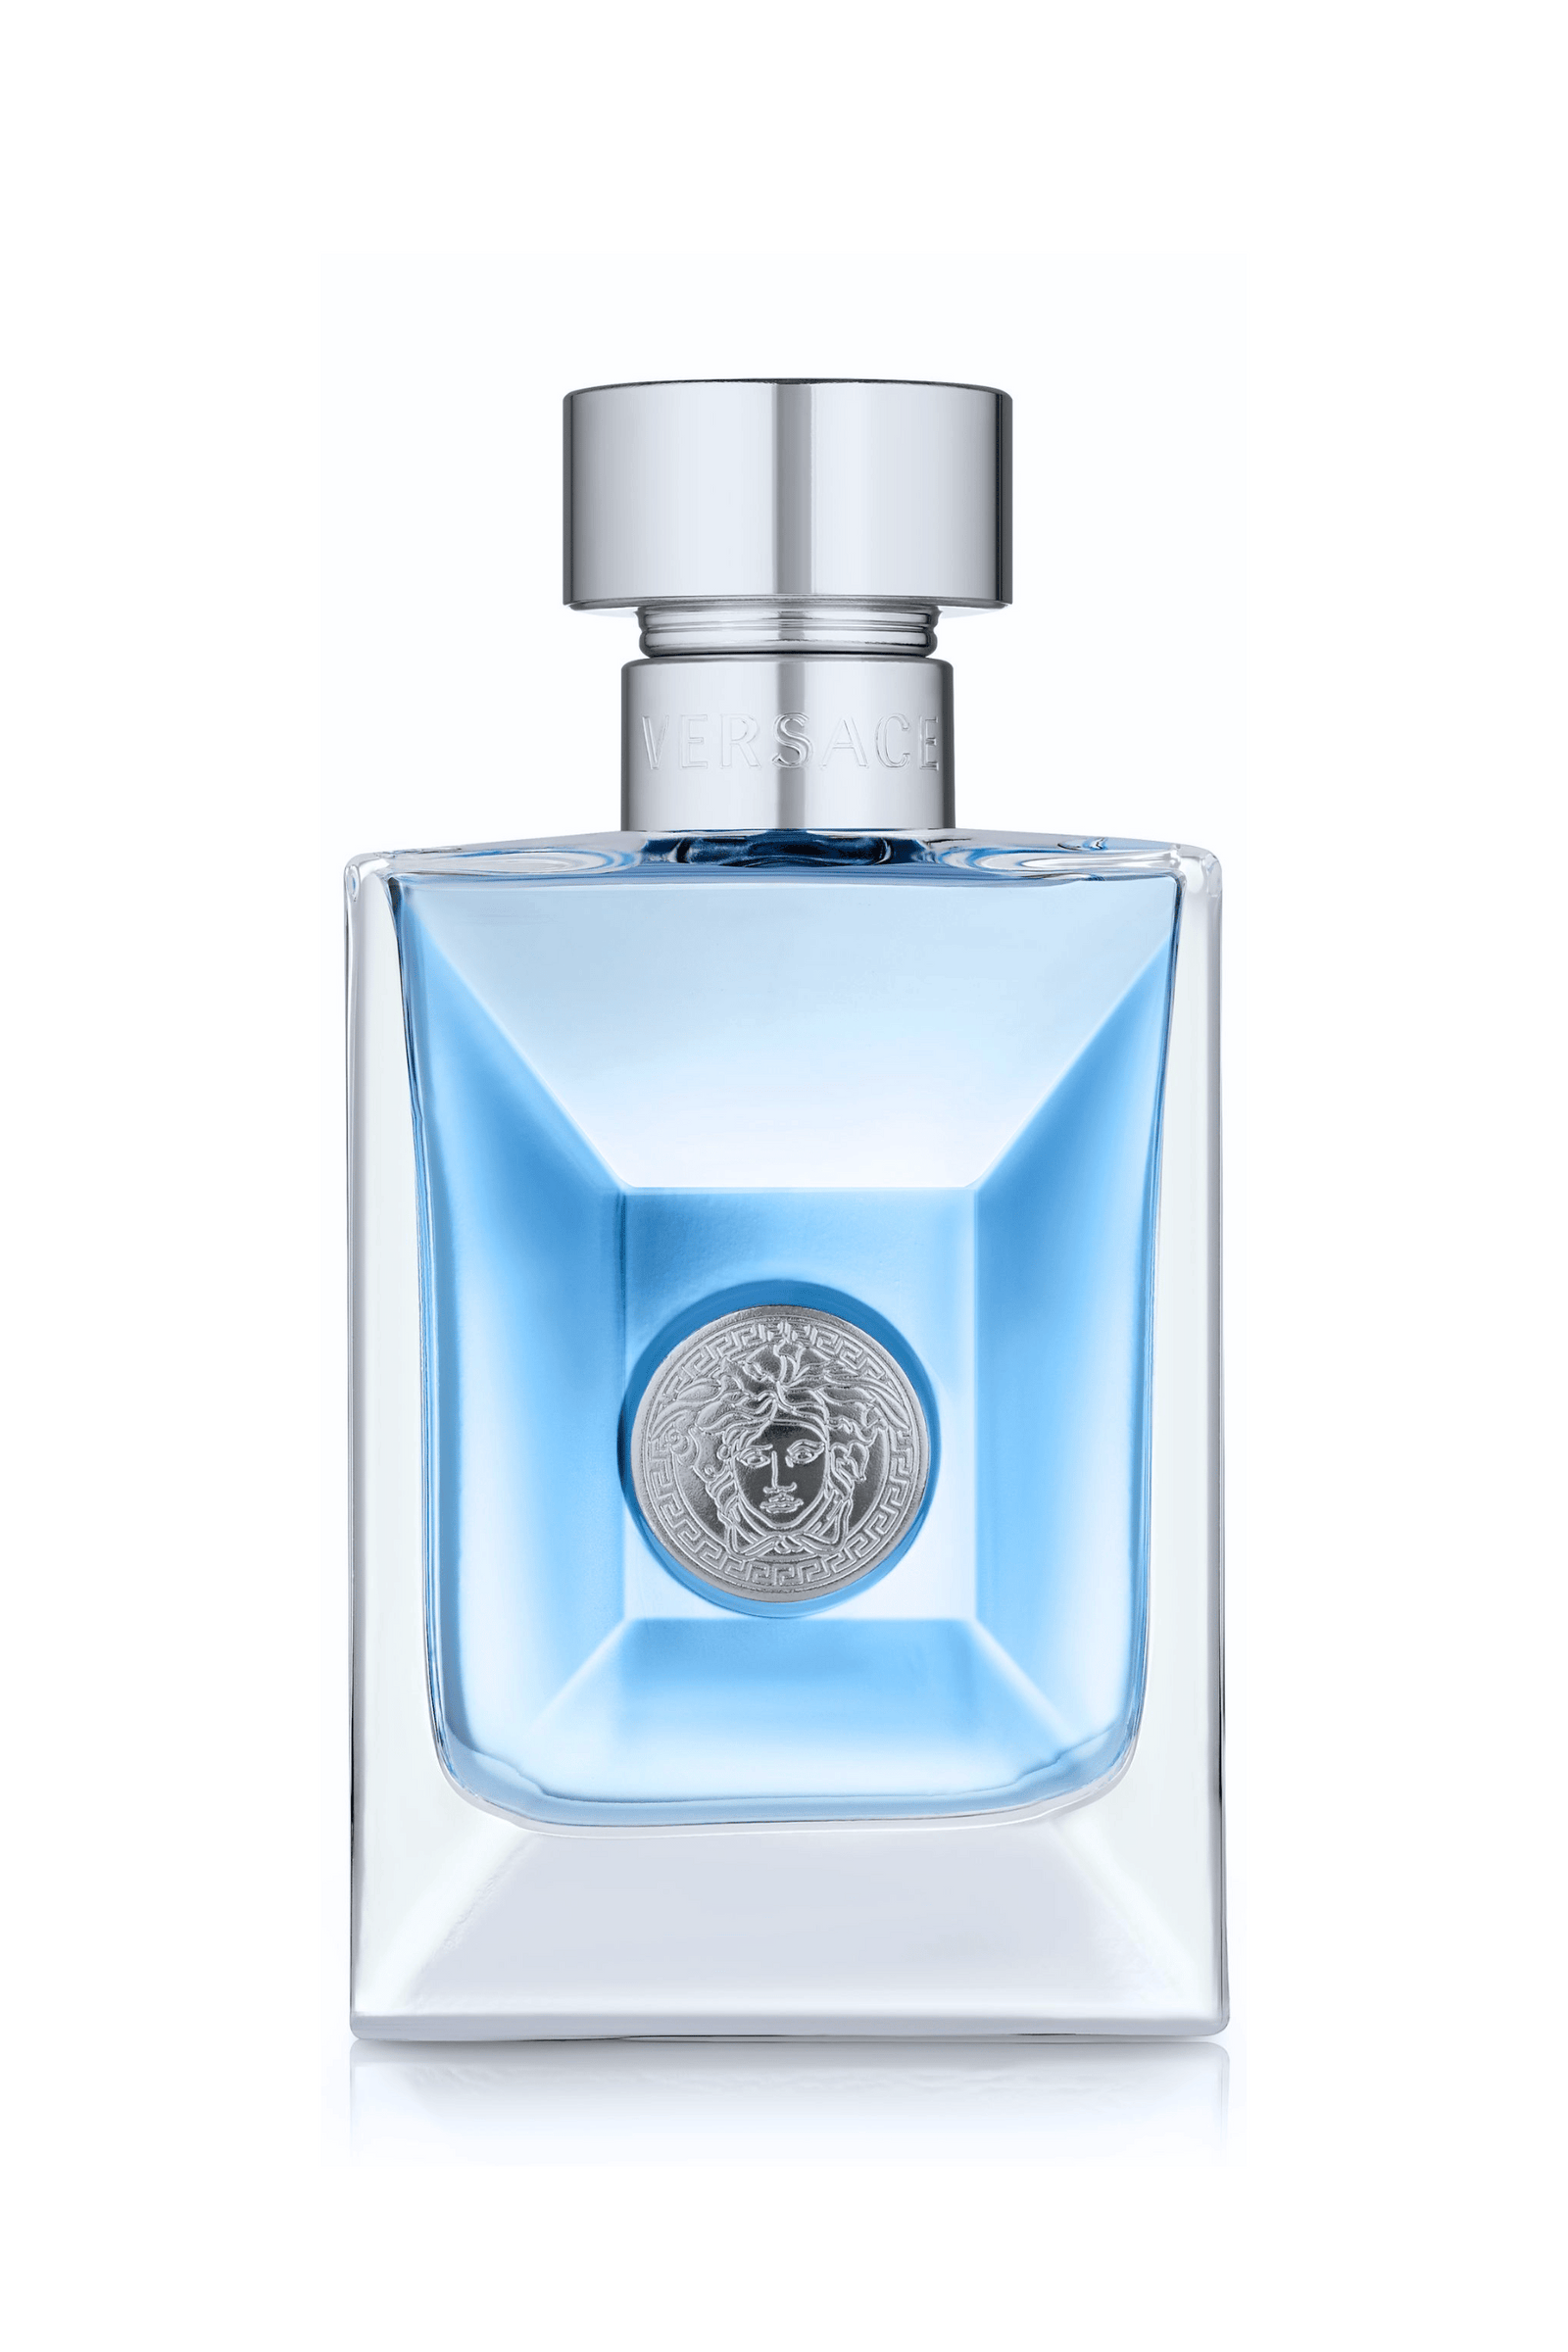 Versace Pour Homme set 3 pcs EDT 3.4oz, Men's Cologne – always special  perfumes & gifts